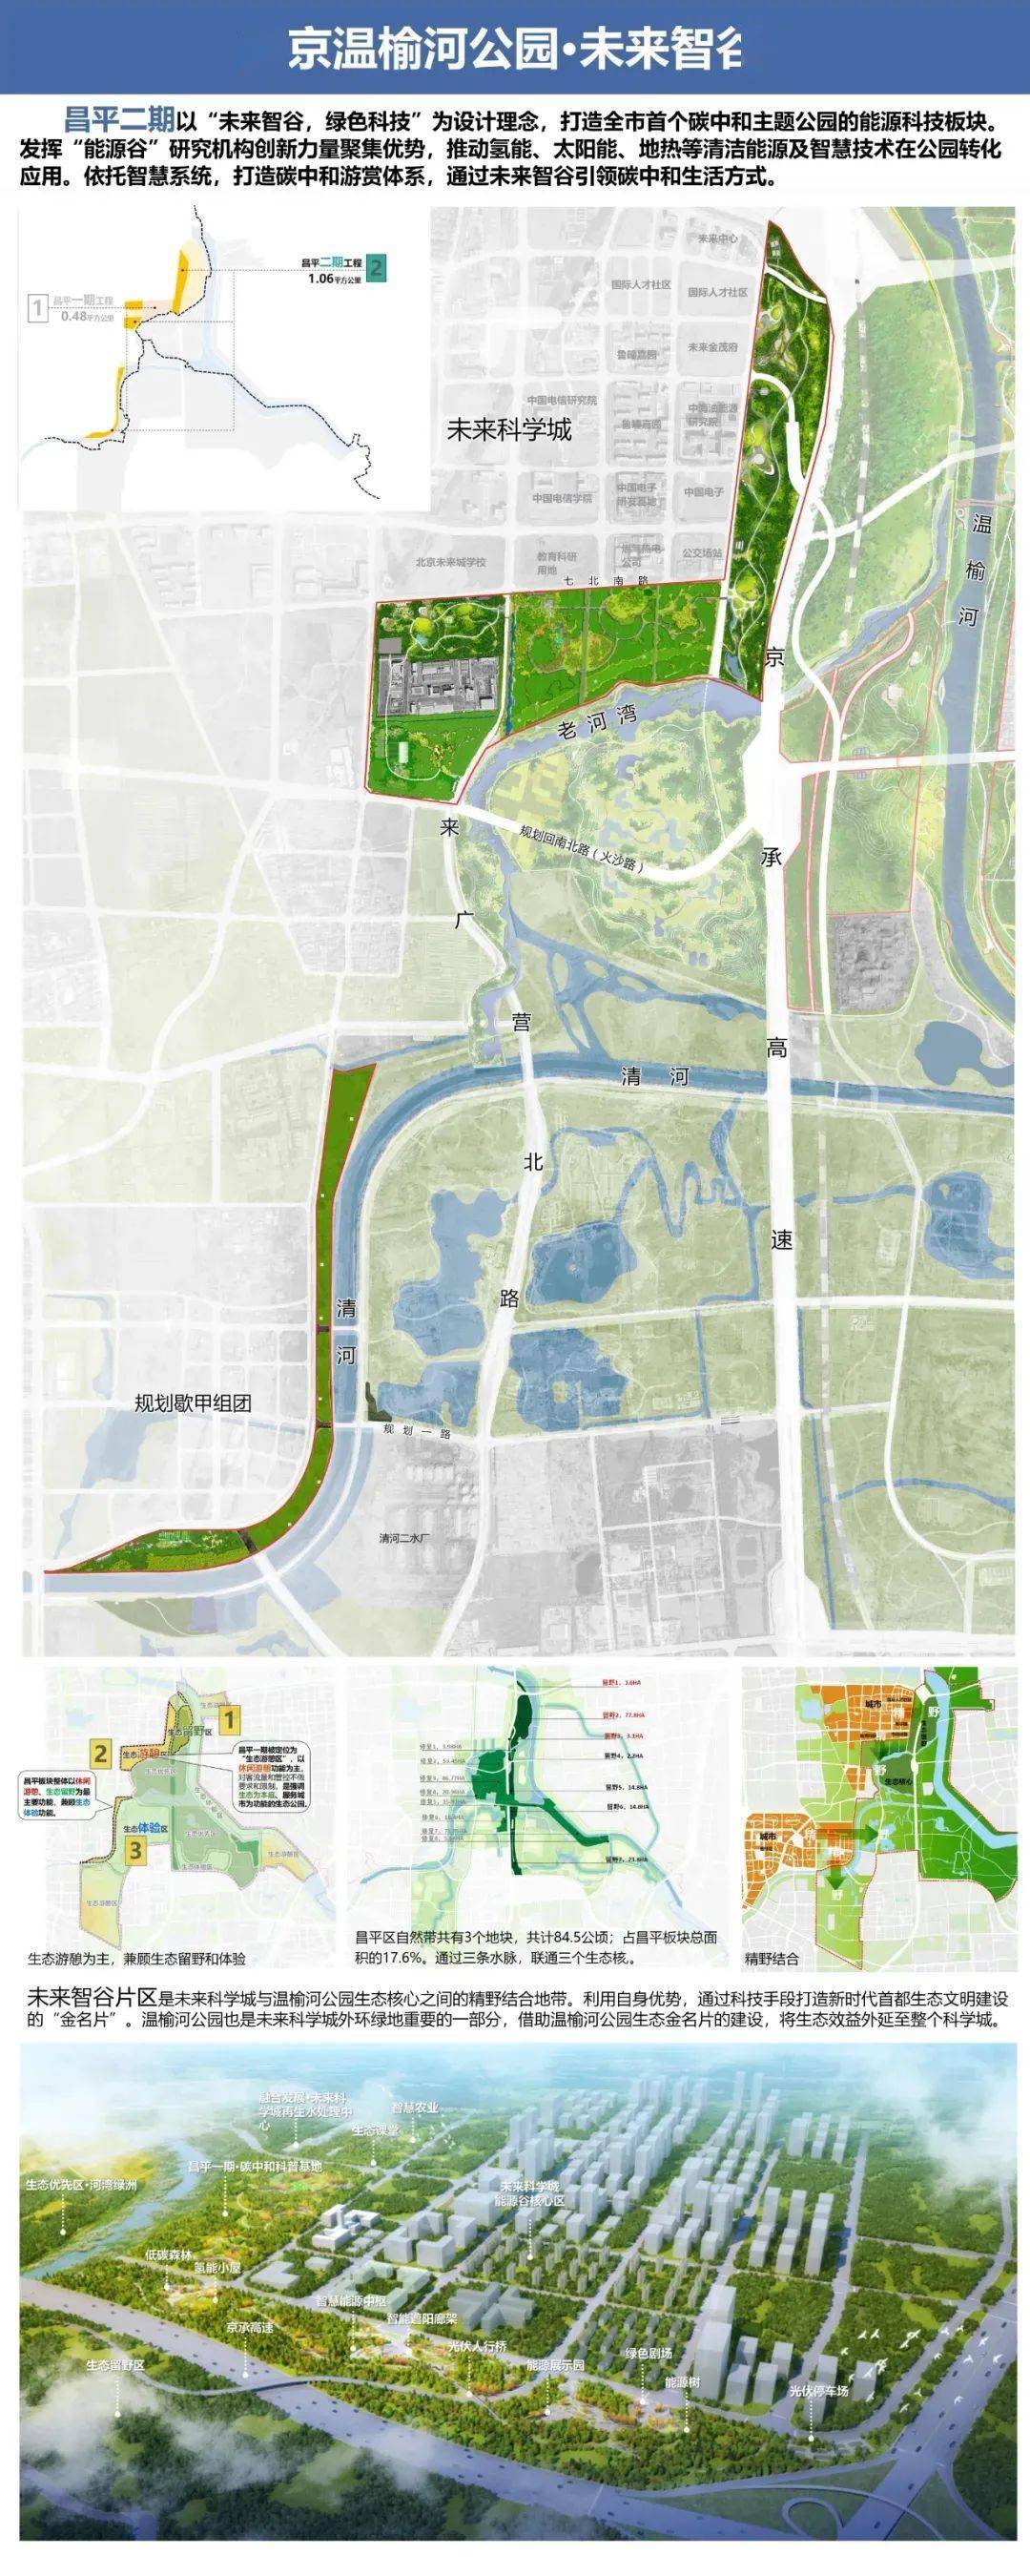 未来智谷新消息来咯温榆河公园昌平二期规划设计方案已开始公开征求